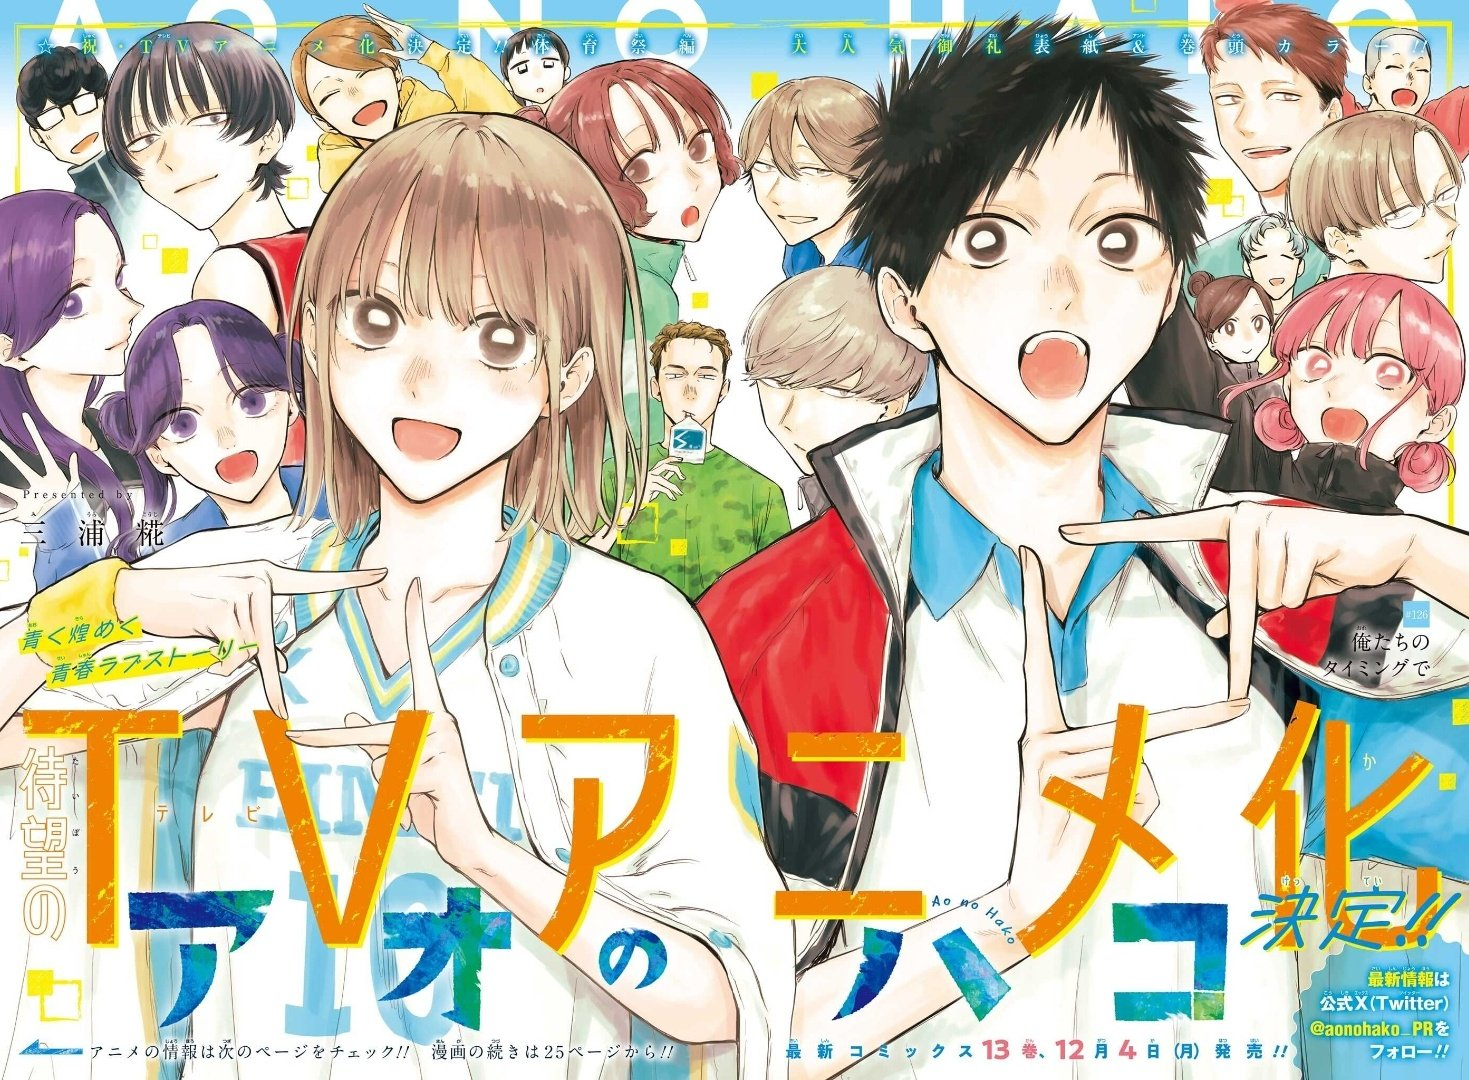 Animes In Japan 🎄 on X: INFO Capa do volume 14 do mangá de 100